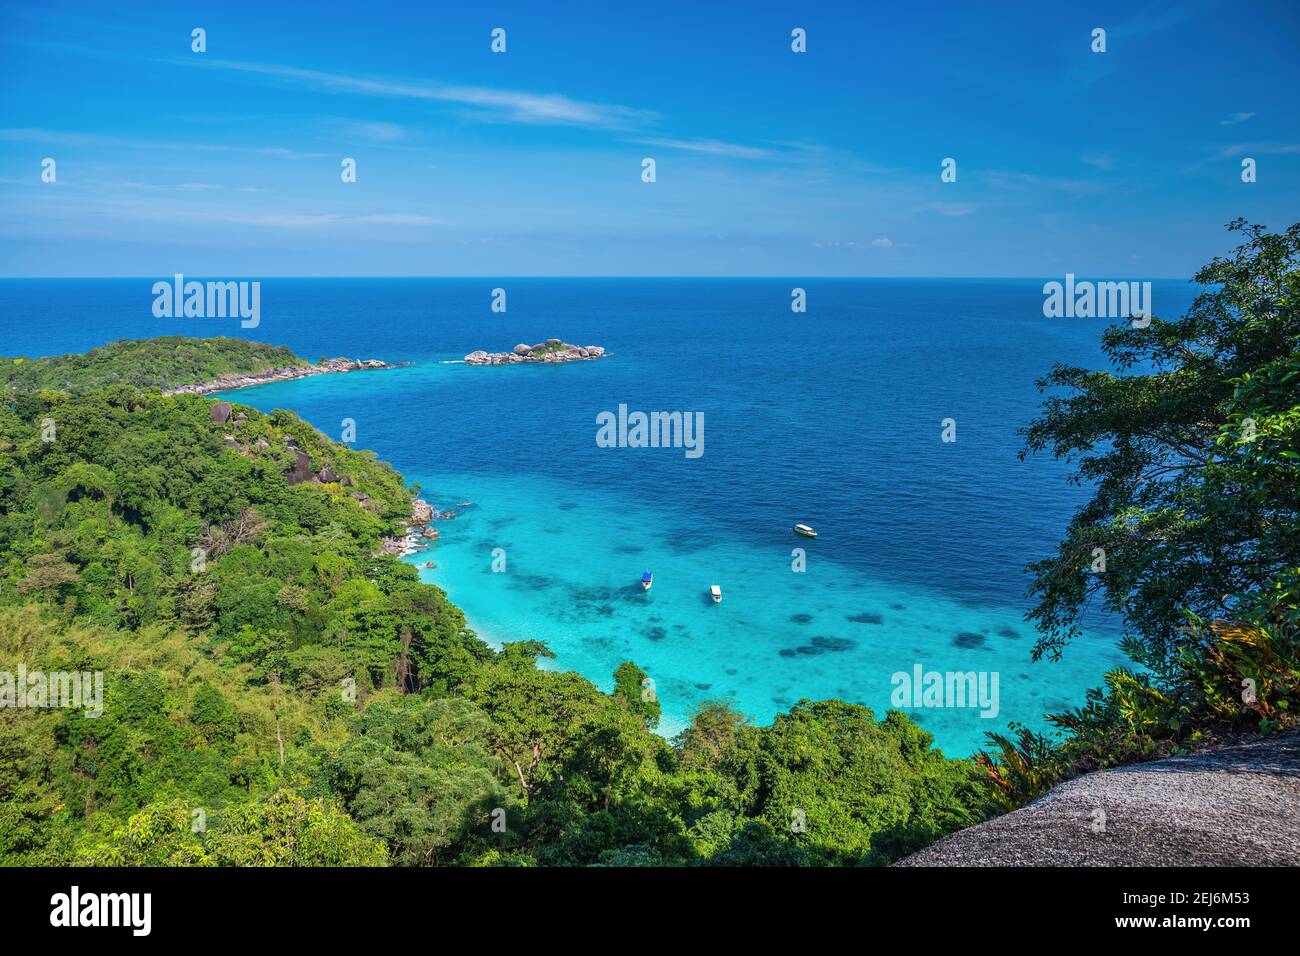 Îles tropicales vue sur l'océan bleu eau de mer et plage de sable blanc aux îles Similan du point de vue célèbre, Phang Nga Thaïlande paysage de la nature Banque D'Images